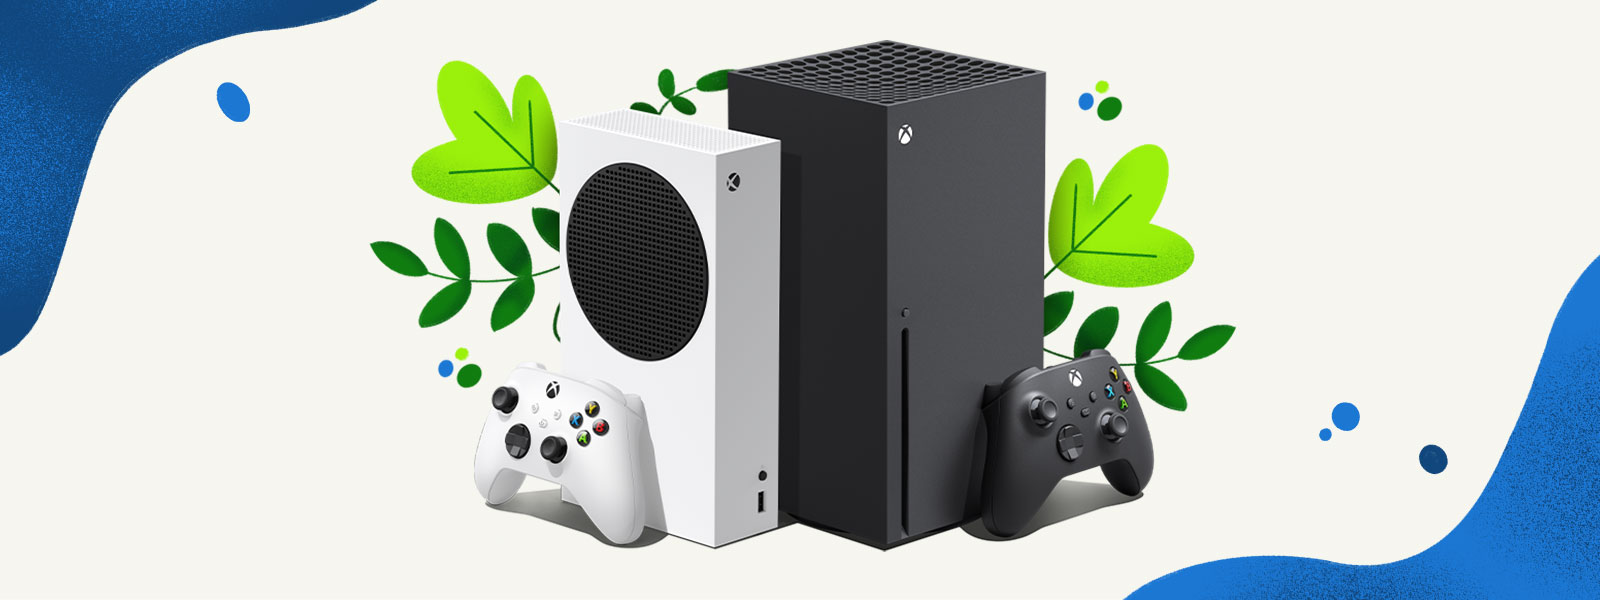 Az Xbox Series X és az Xbox Series S konzolok egymás mellett láthatók egy növényekből és kék vízfoltokból álló dekoratív háttér előtt.